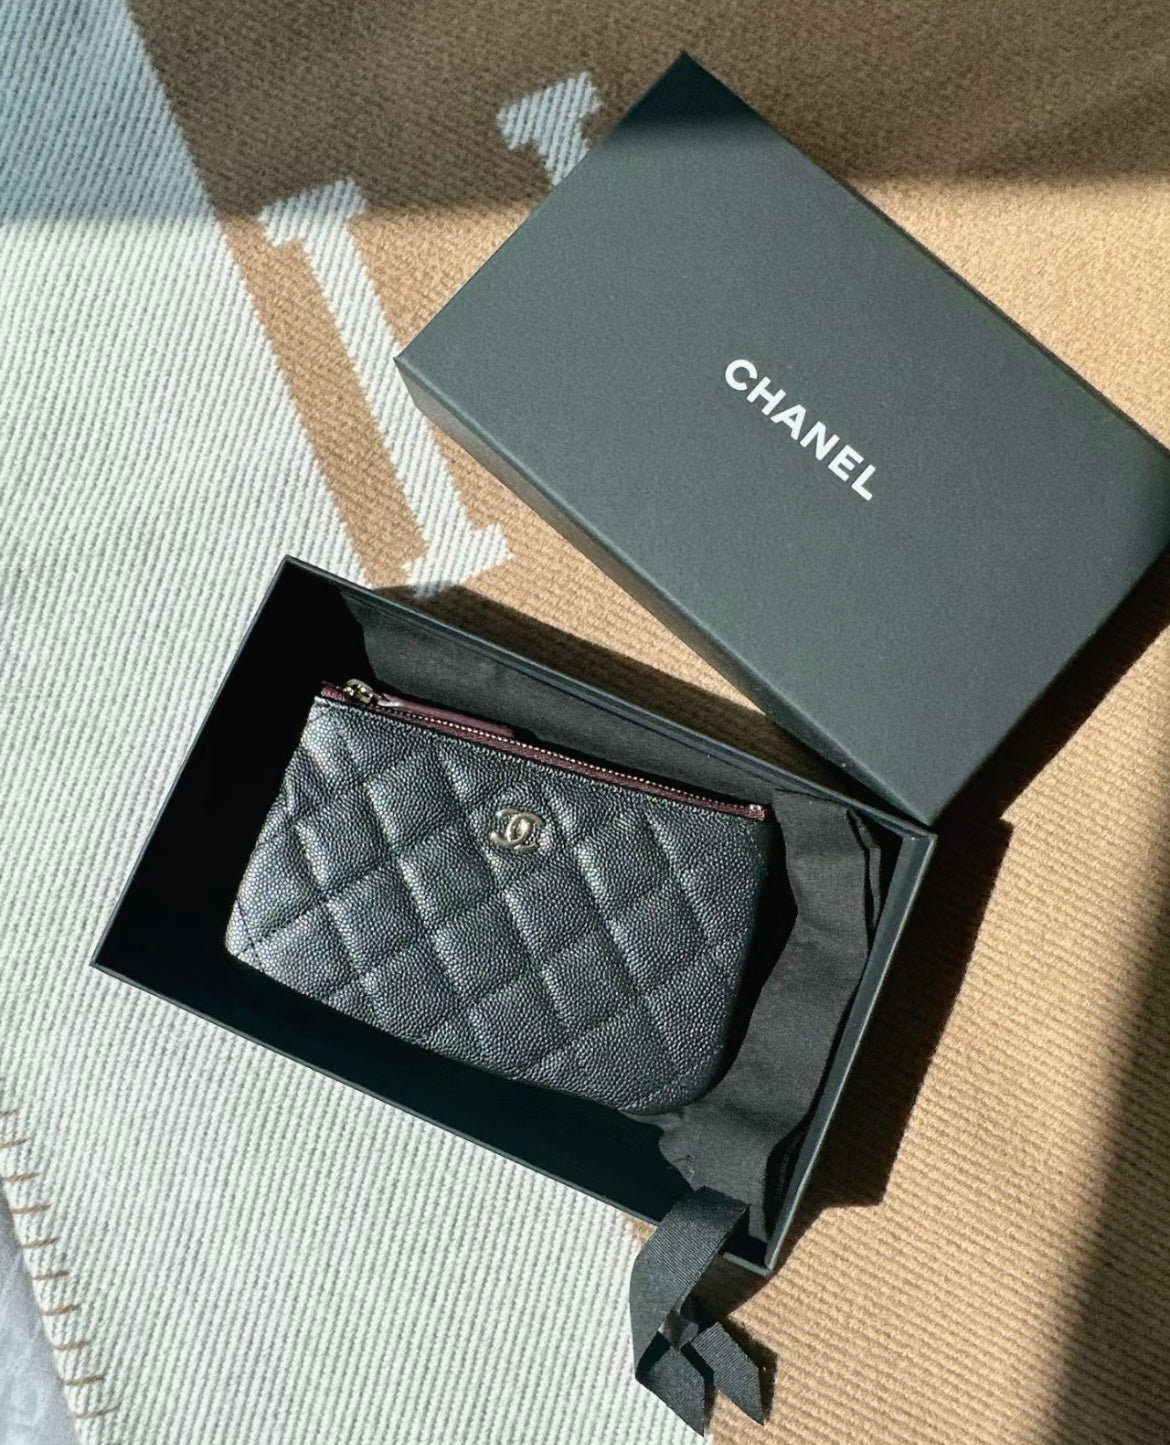 chanel classic mini pouch